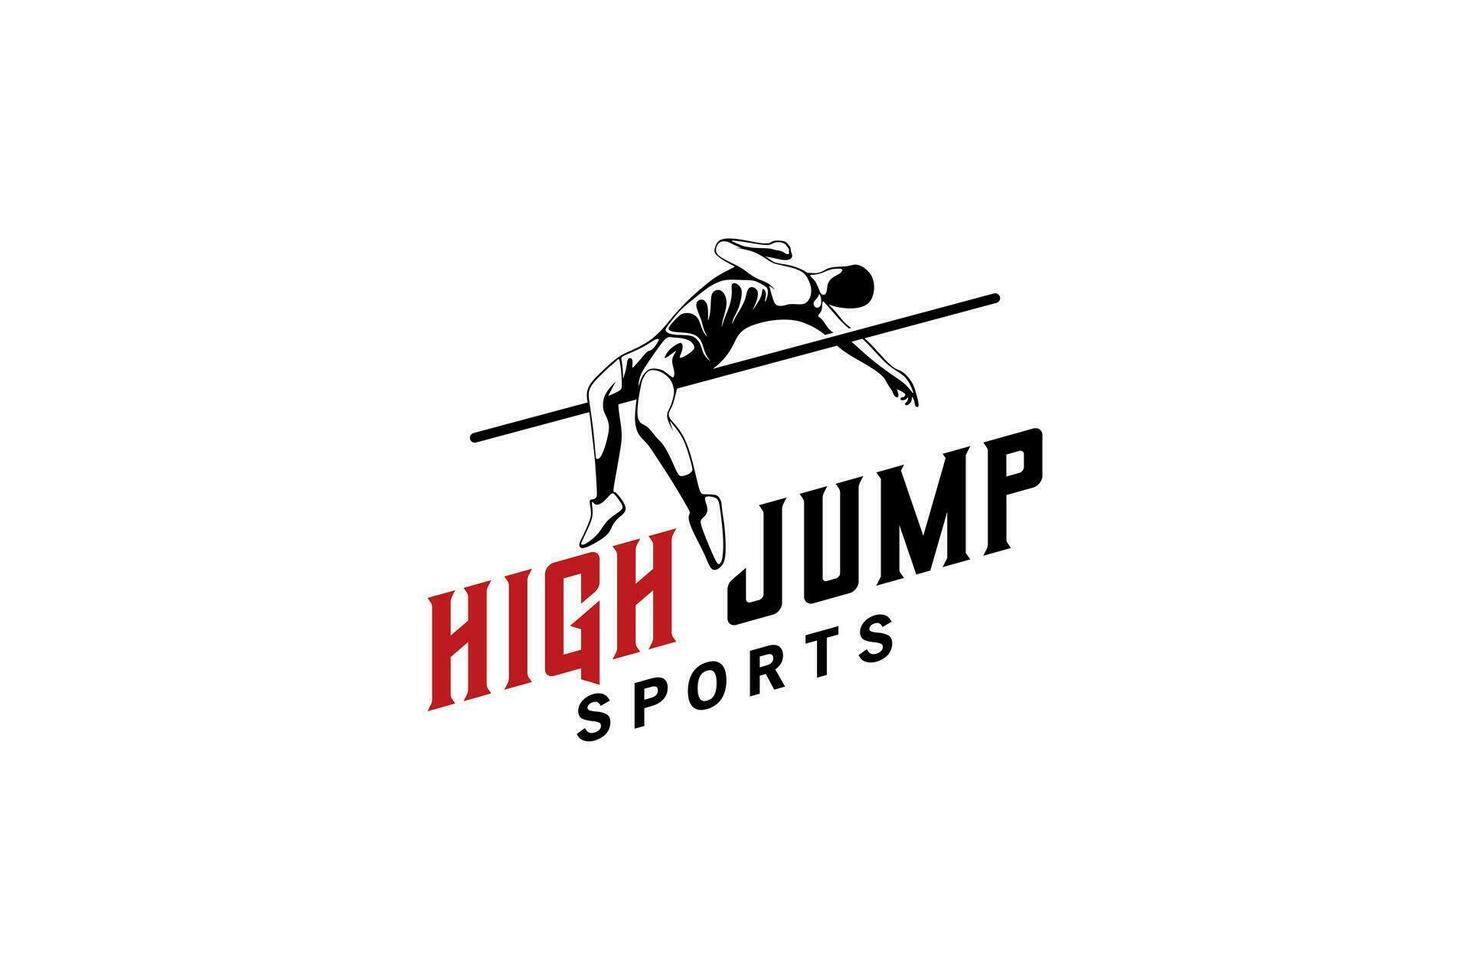 profesional estilo masculino alto saltar atleta logo diseño vector